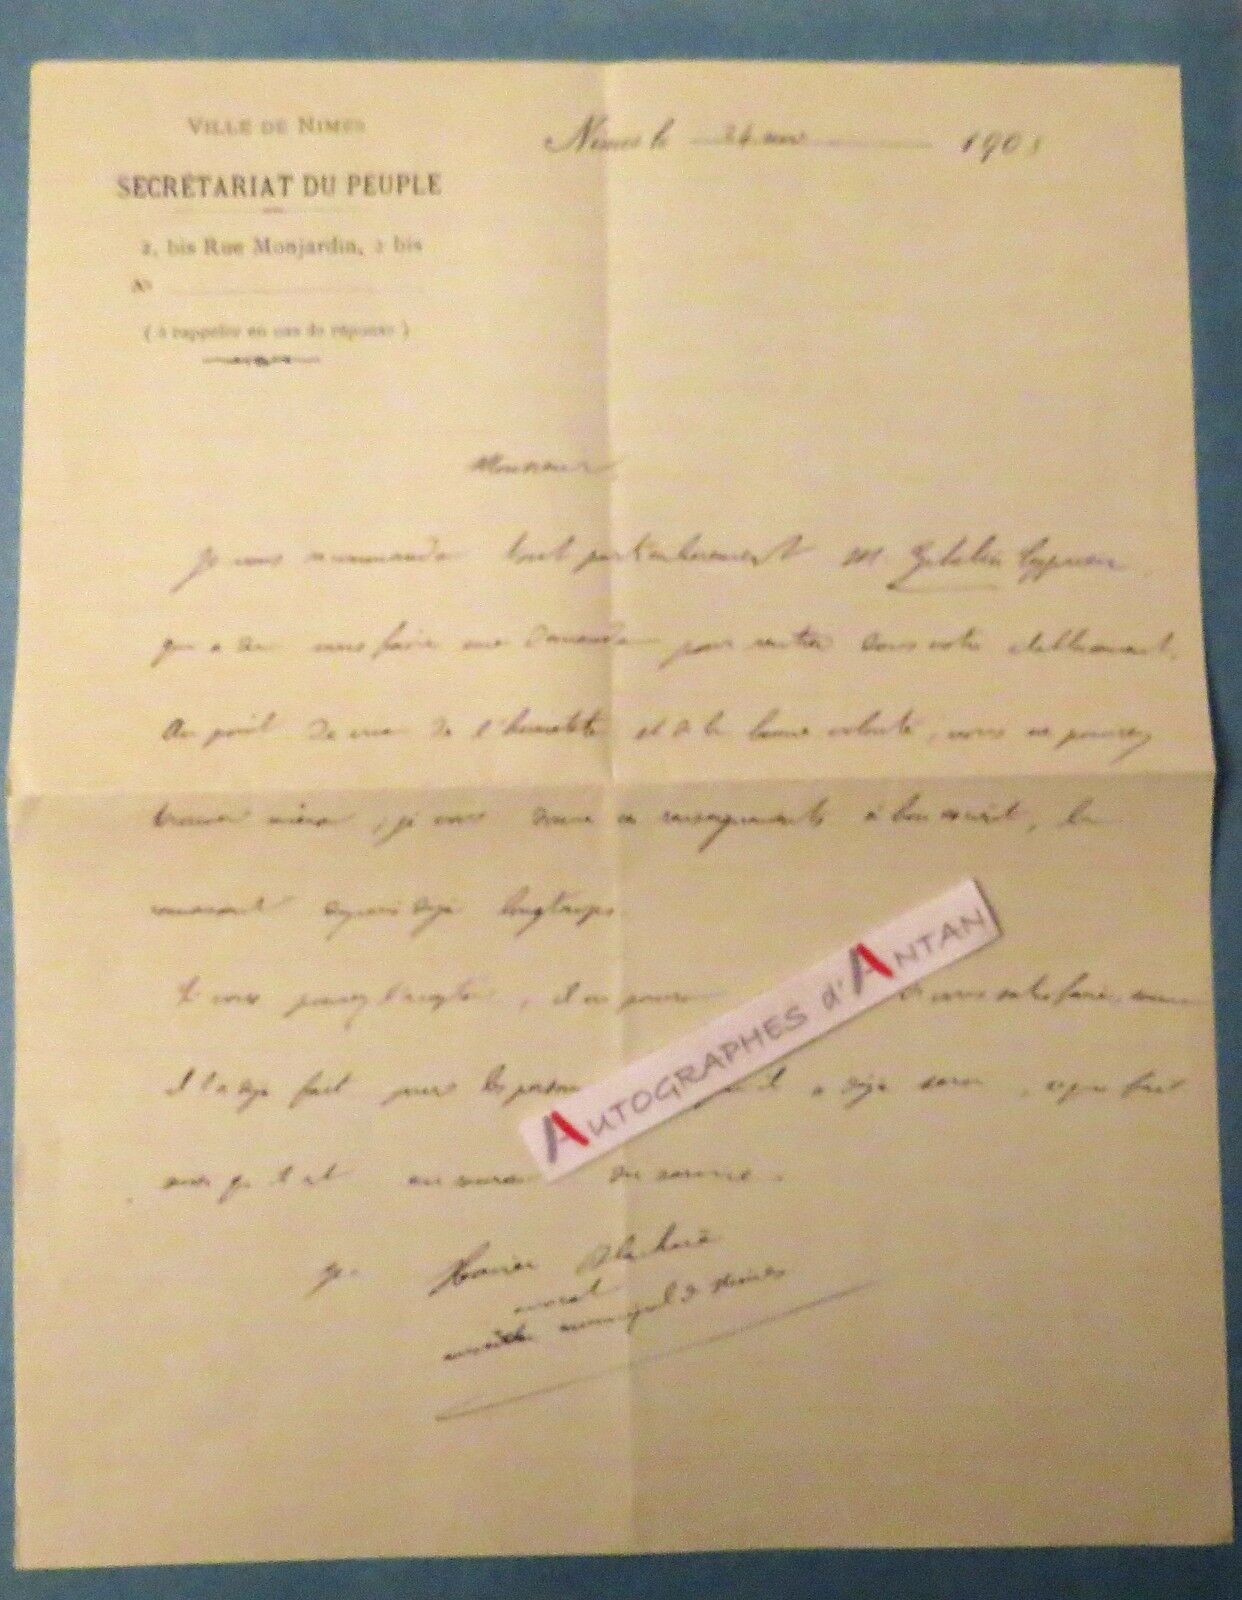 ♦ L.A.S 1905 Nimes People's Secretariat Xavier BLACHERE lawyer letter - Ghibelin